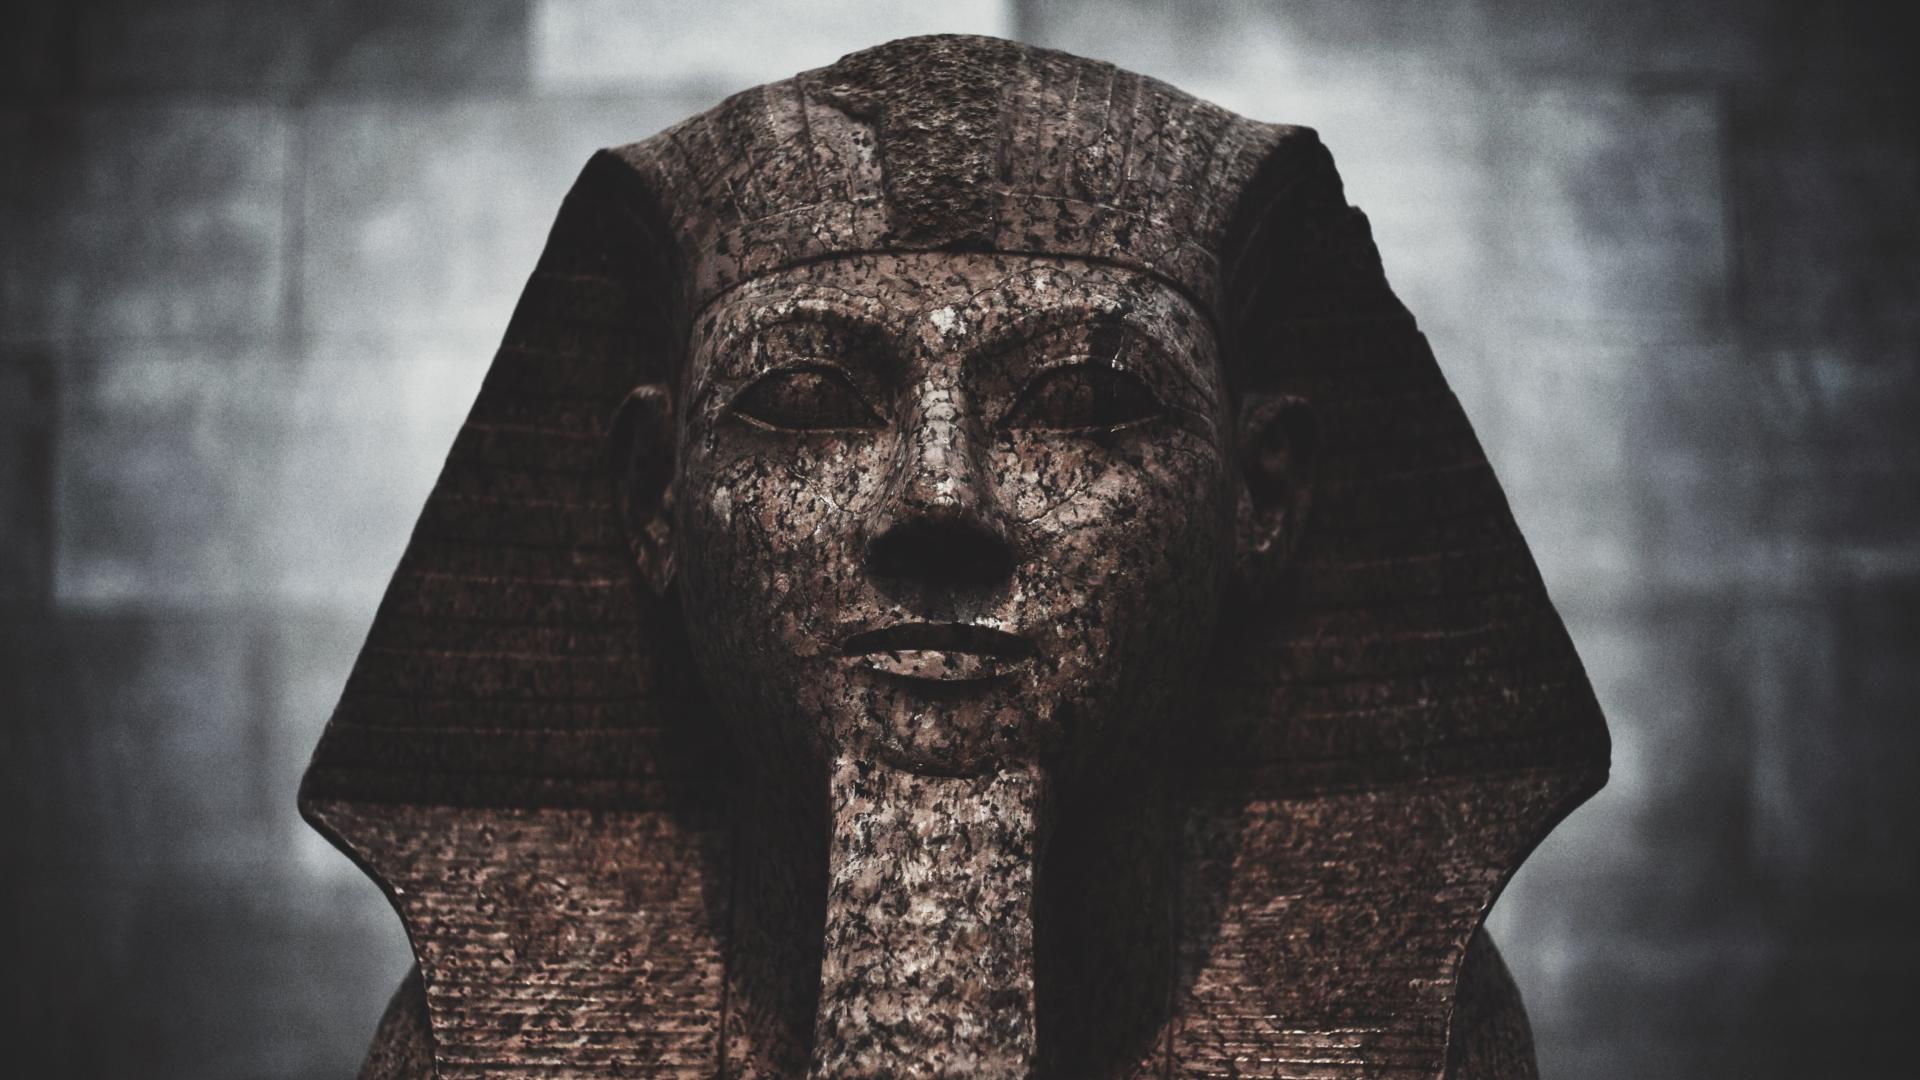 El Antiguo Egipto: la verdad tras la ficción hollywoodiense